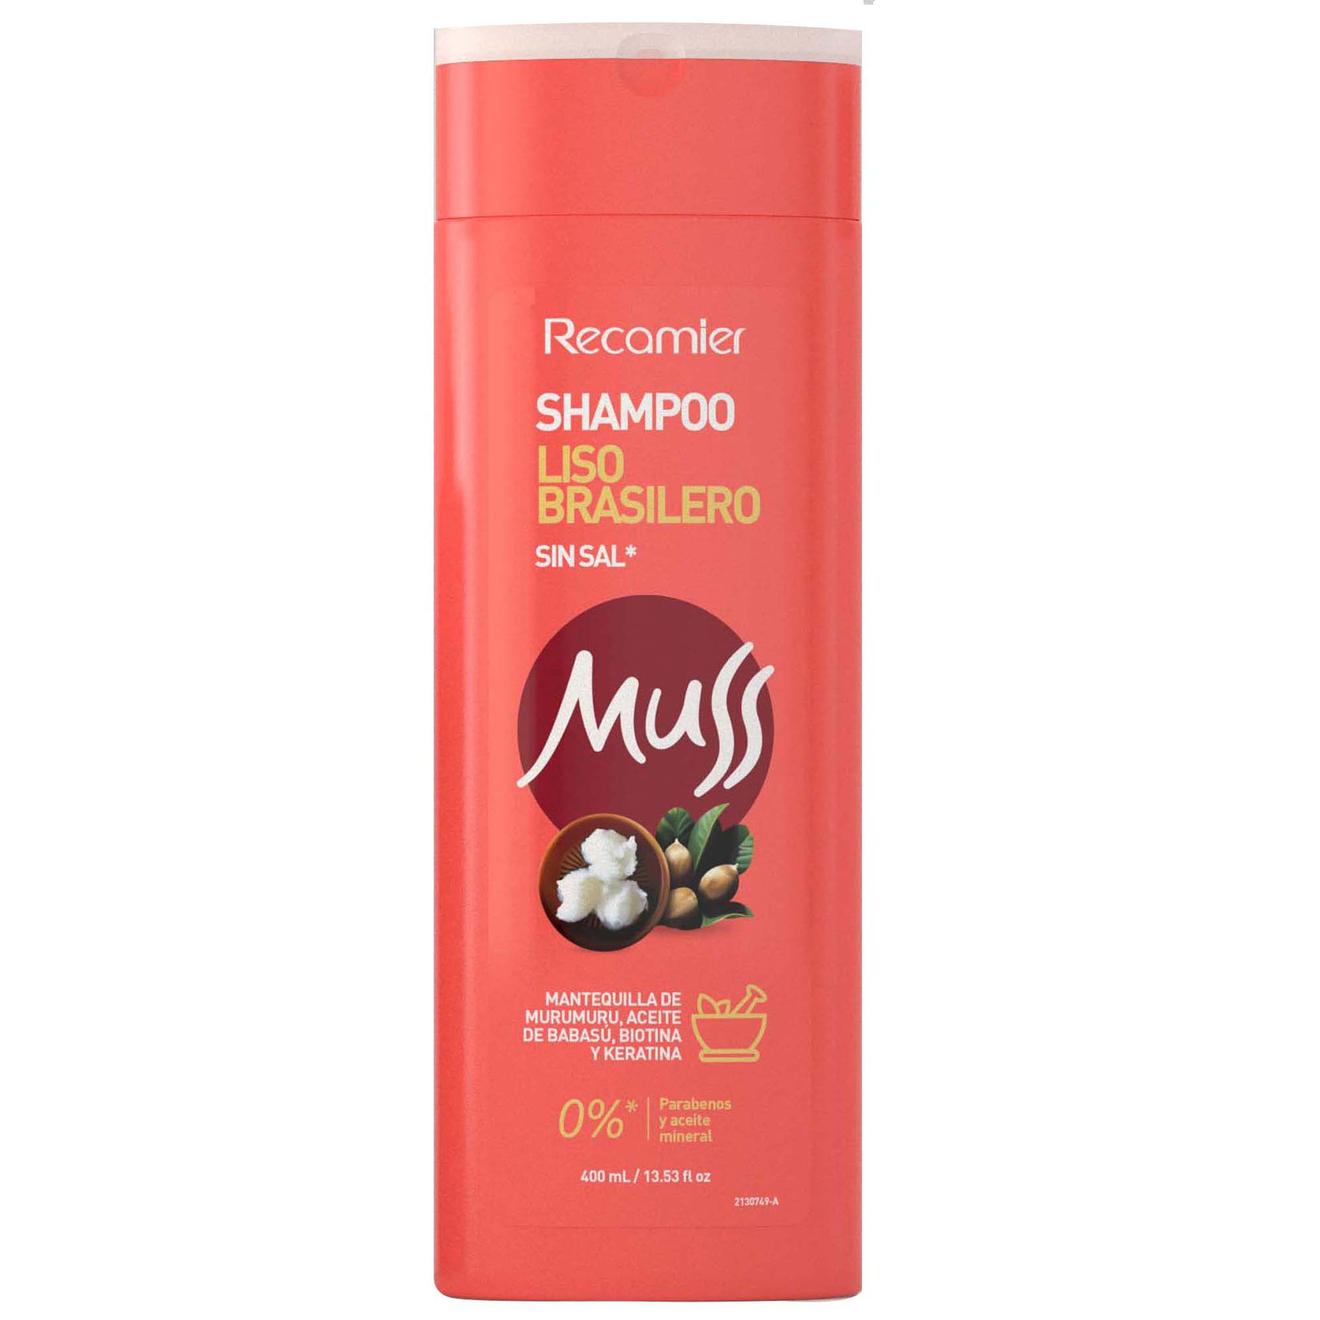 Oferta de Shampoo Muss Liso Brasile x 400 Ml por $25400 en Droguerías Colsubsidio